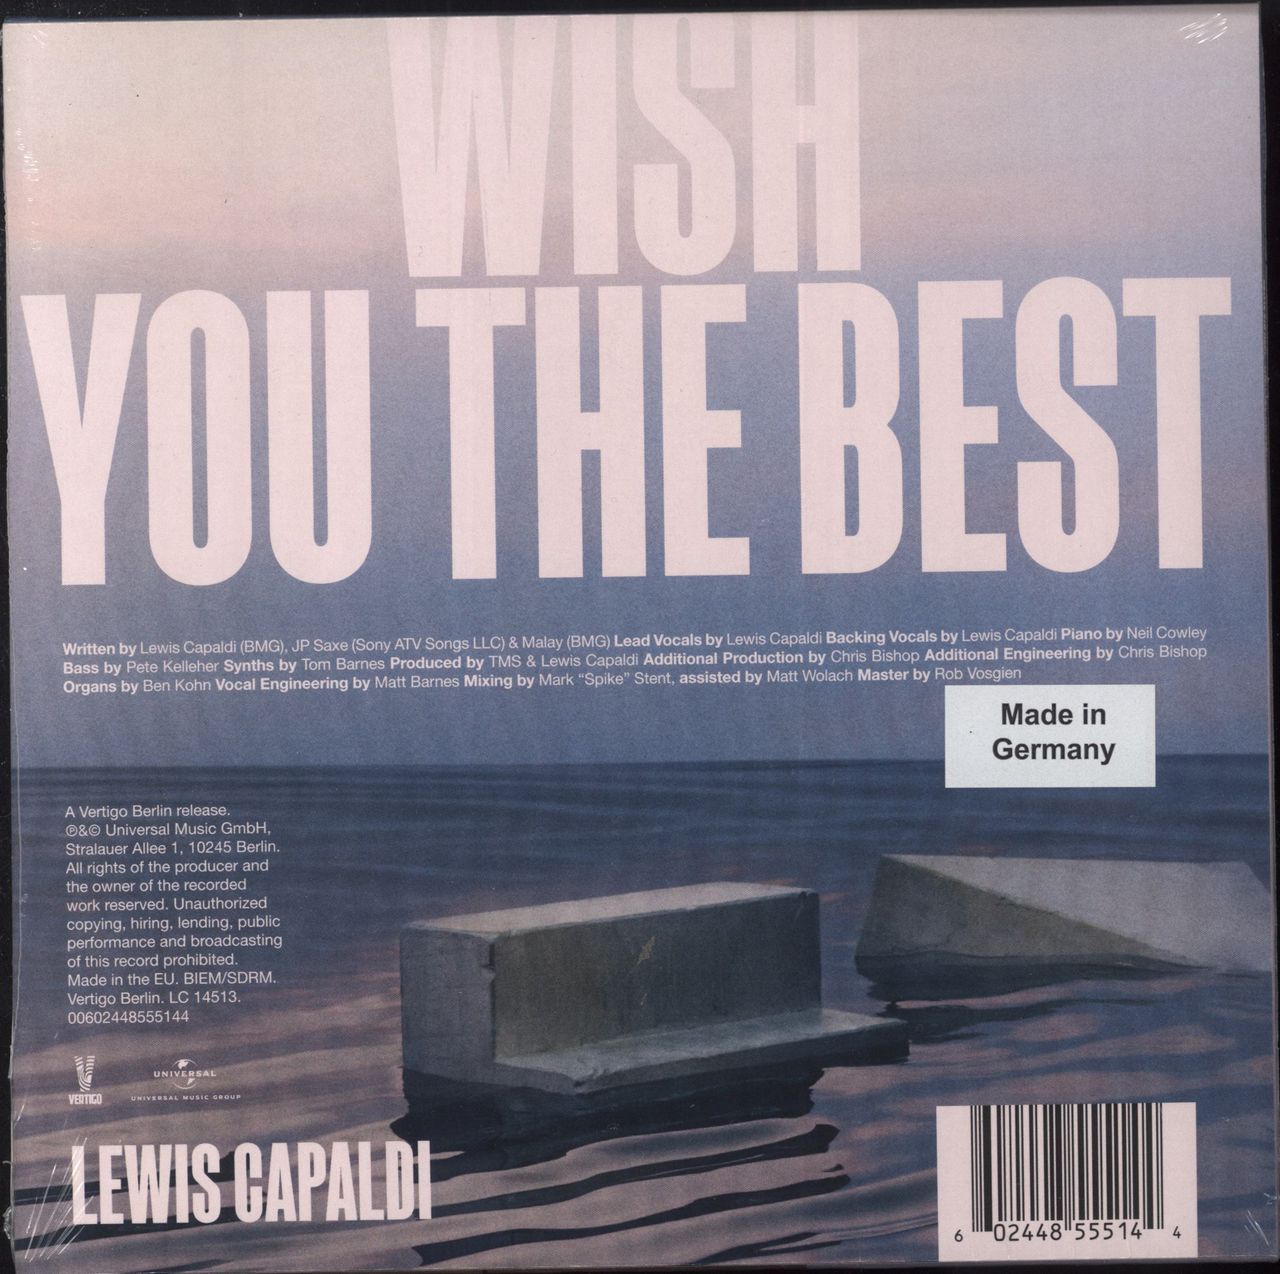 Lewis Capaldi Wish You The Best - Sealed UK 7 vinyl — RareVinyl.com